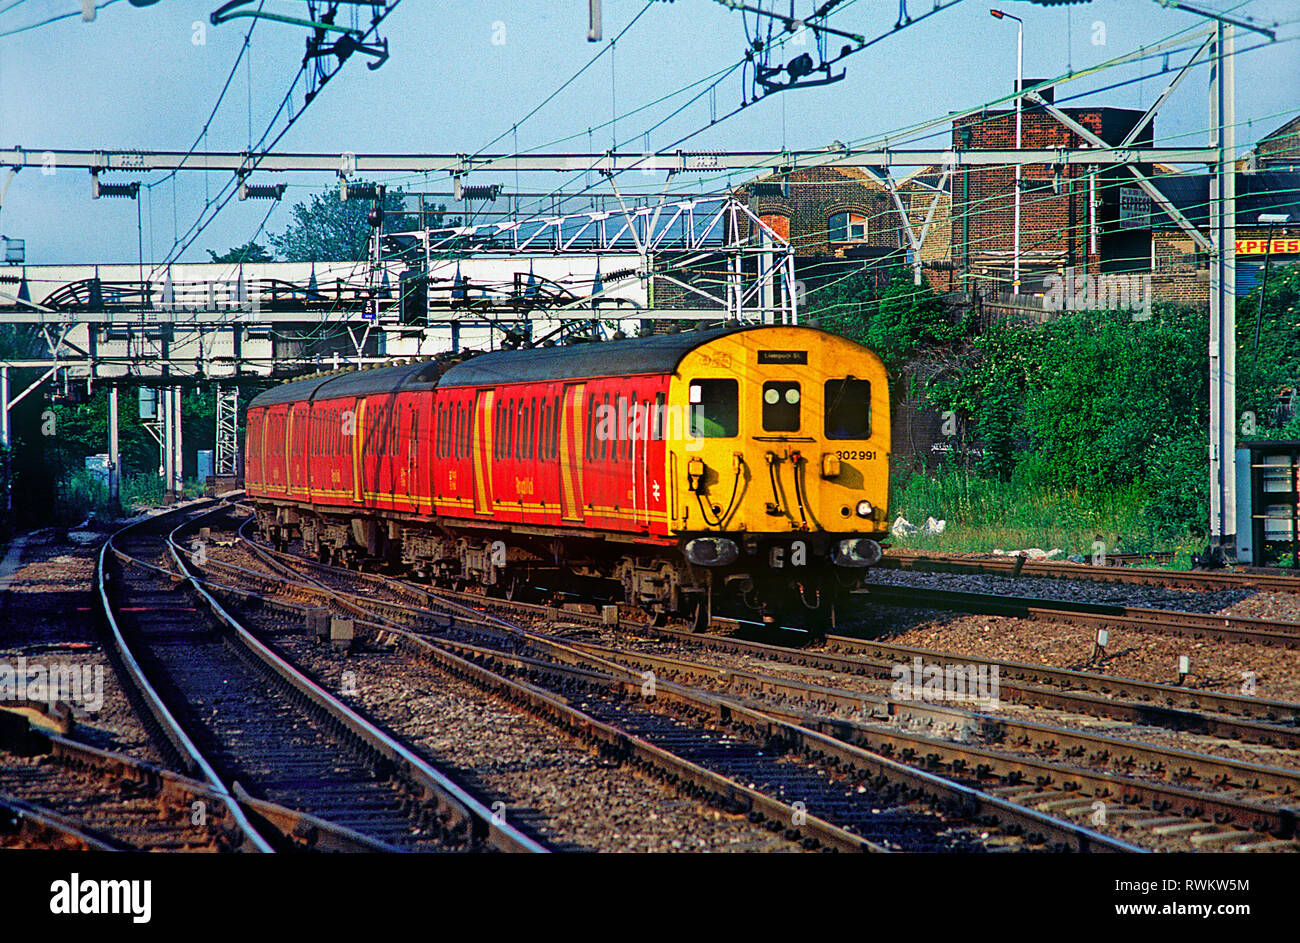 Paquetes clase 302 número de unidad 302991 pasando Stratford en el este de Londres. 4 de julio de 1991. Foto de stock